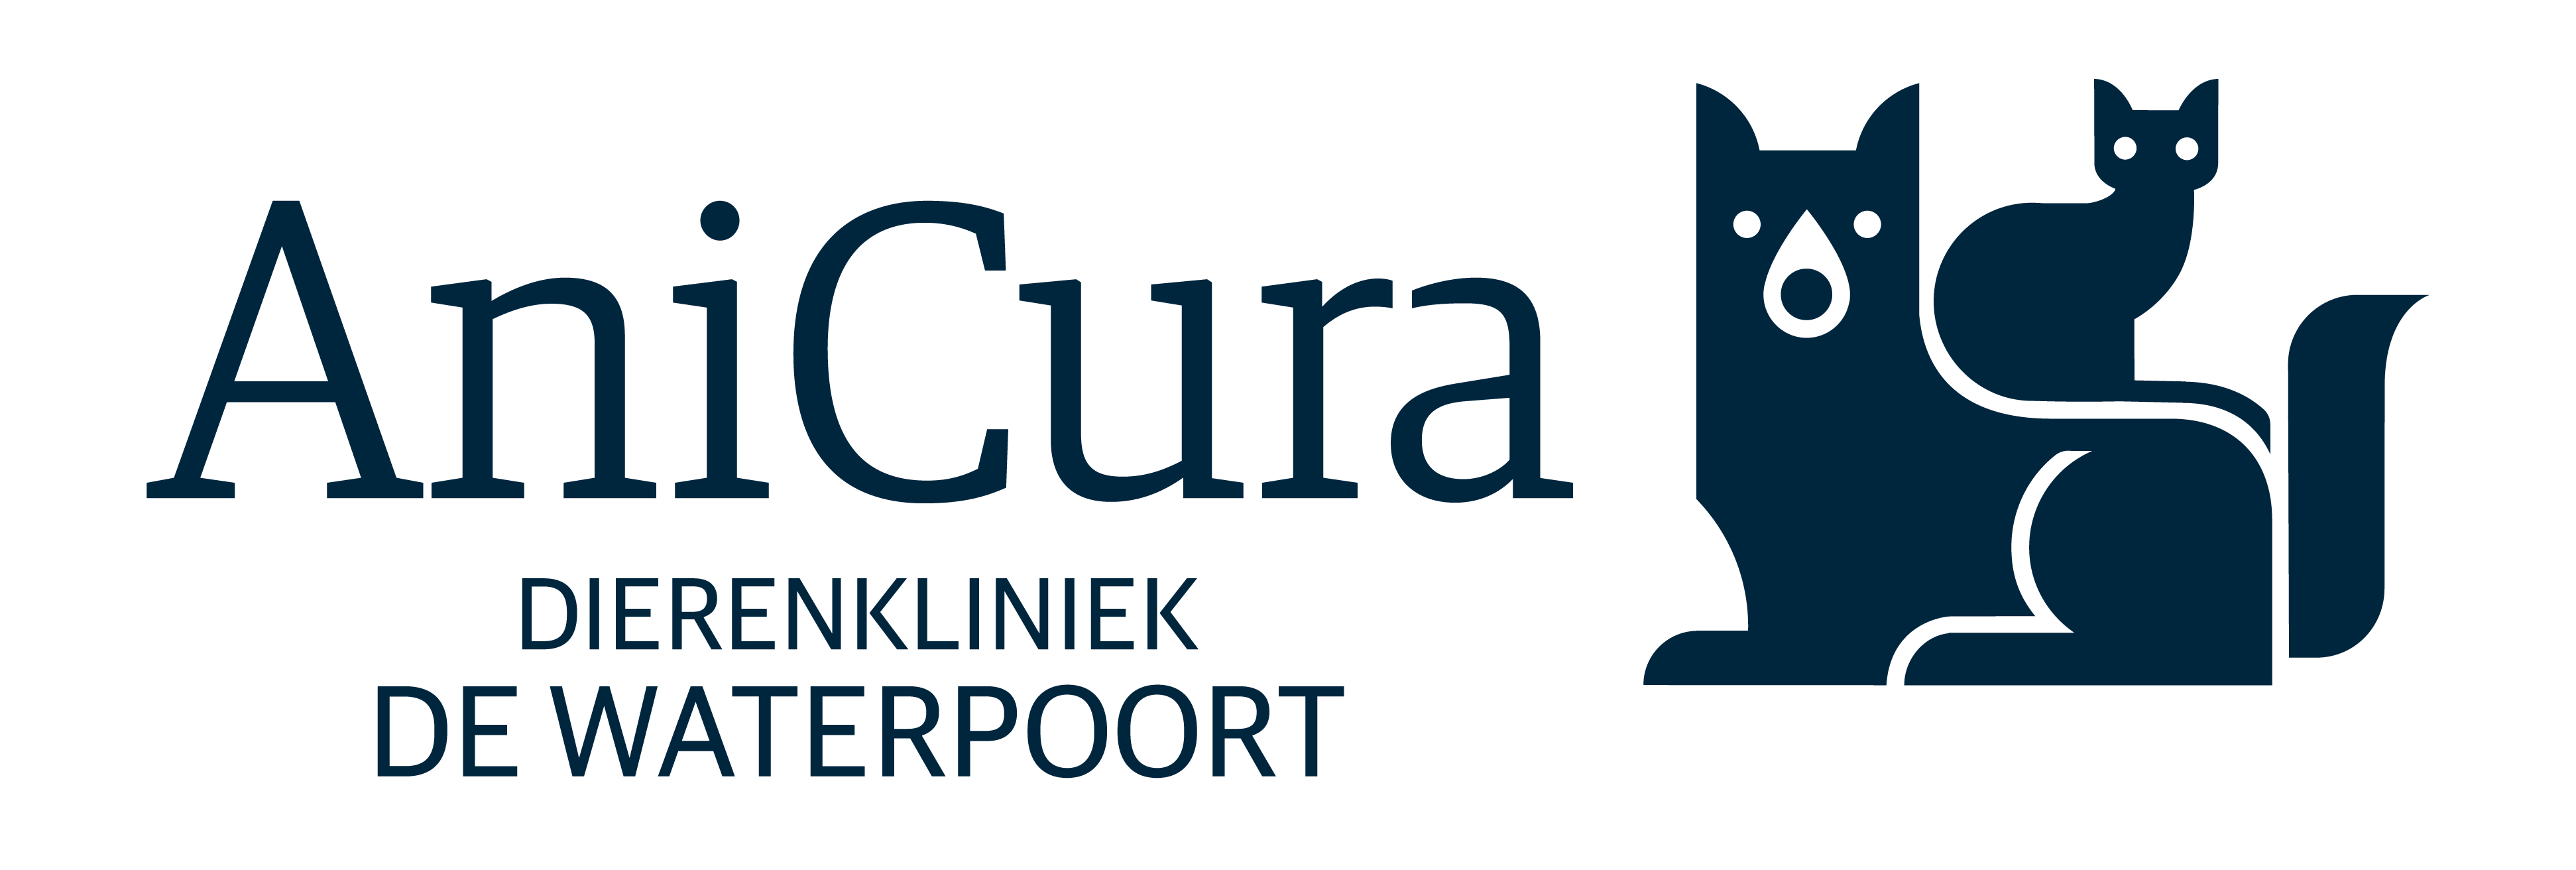 AniCura Dierenkliniek De Waterpoort logo